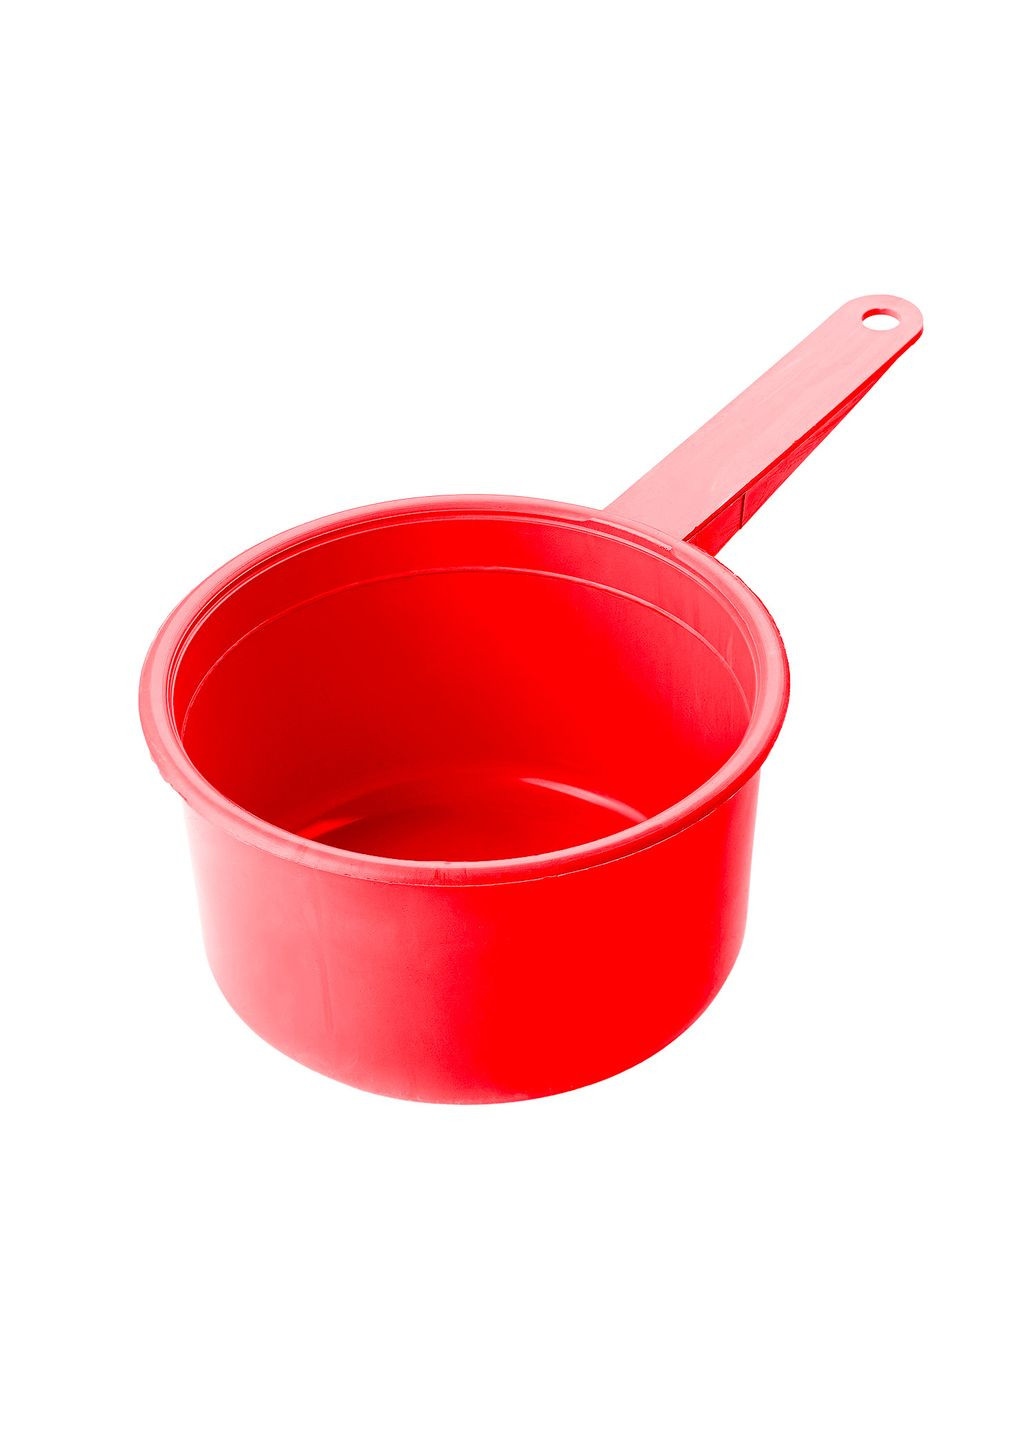 Ковш пластиковый 1 литр с ручкой Красный Kitchette (261851789)